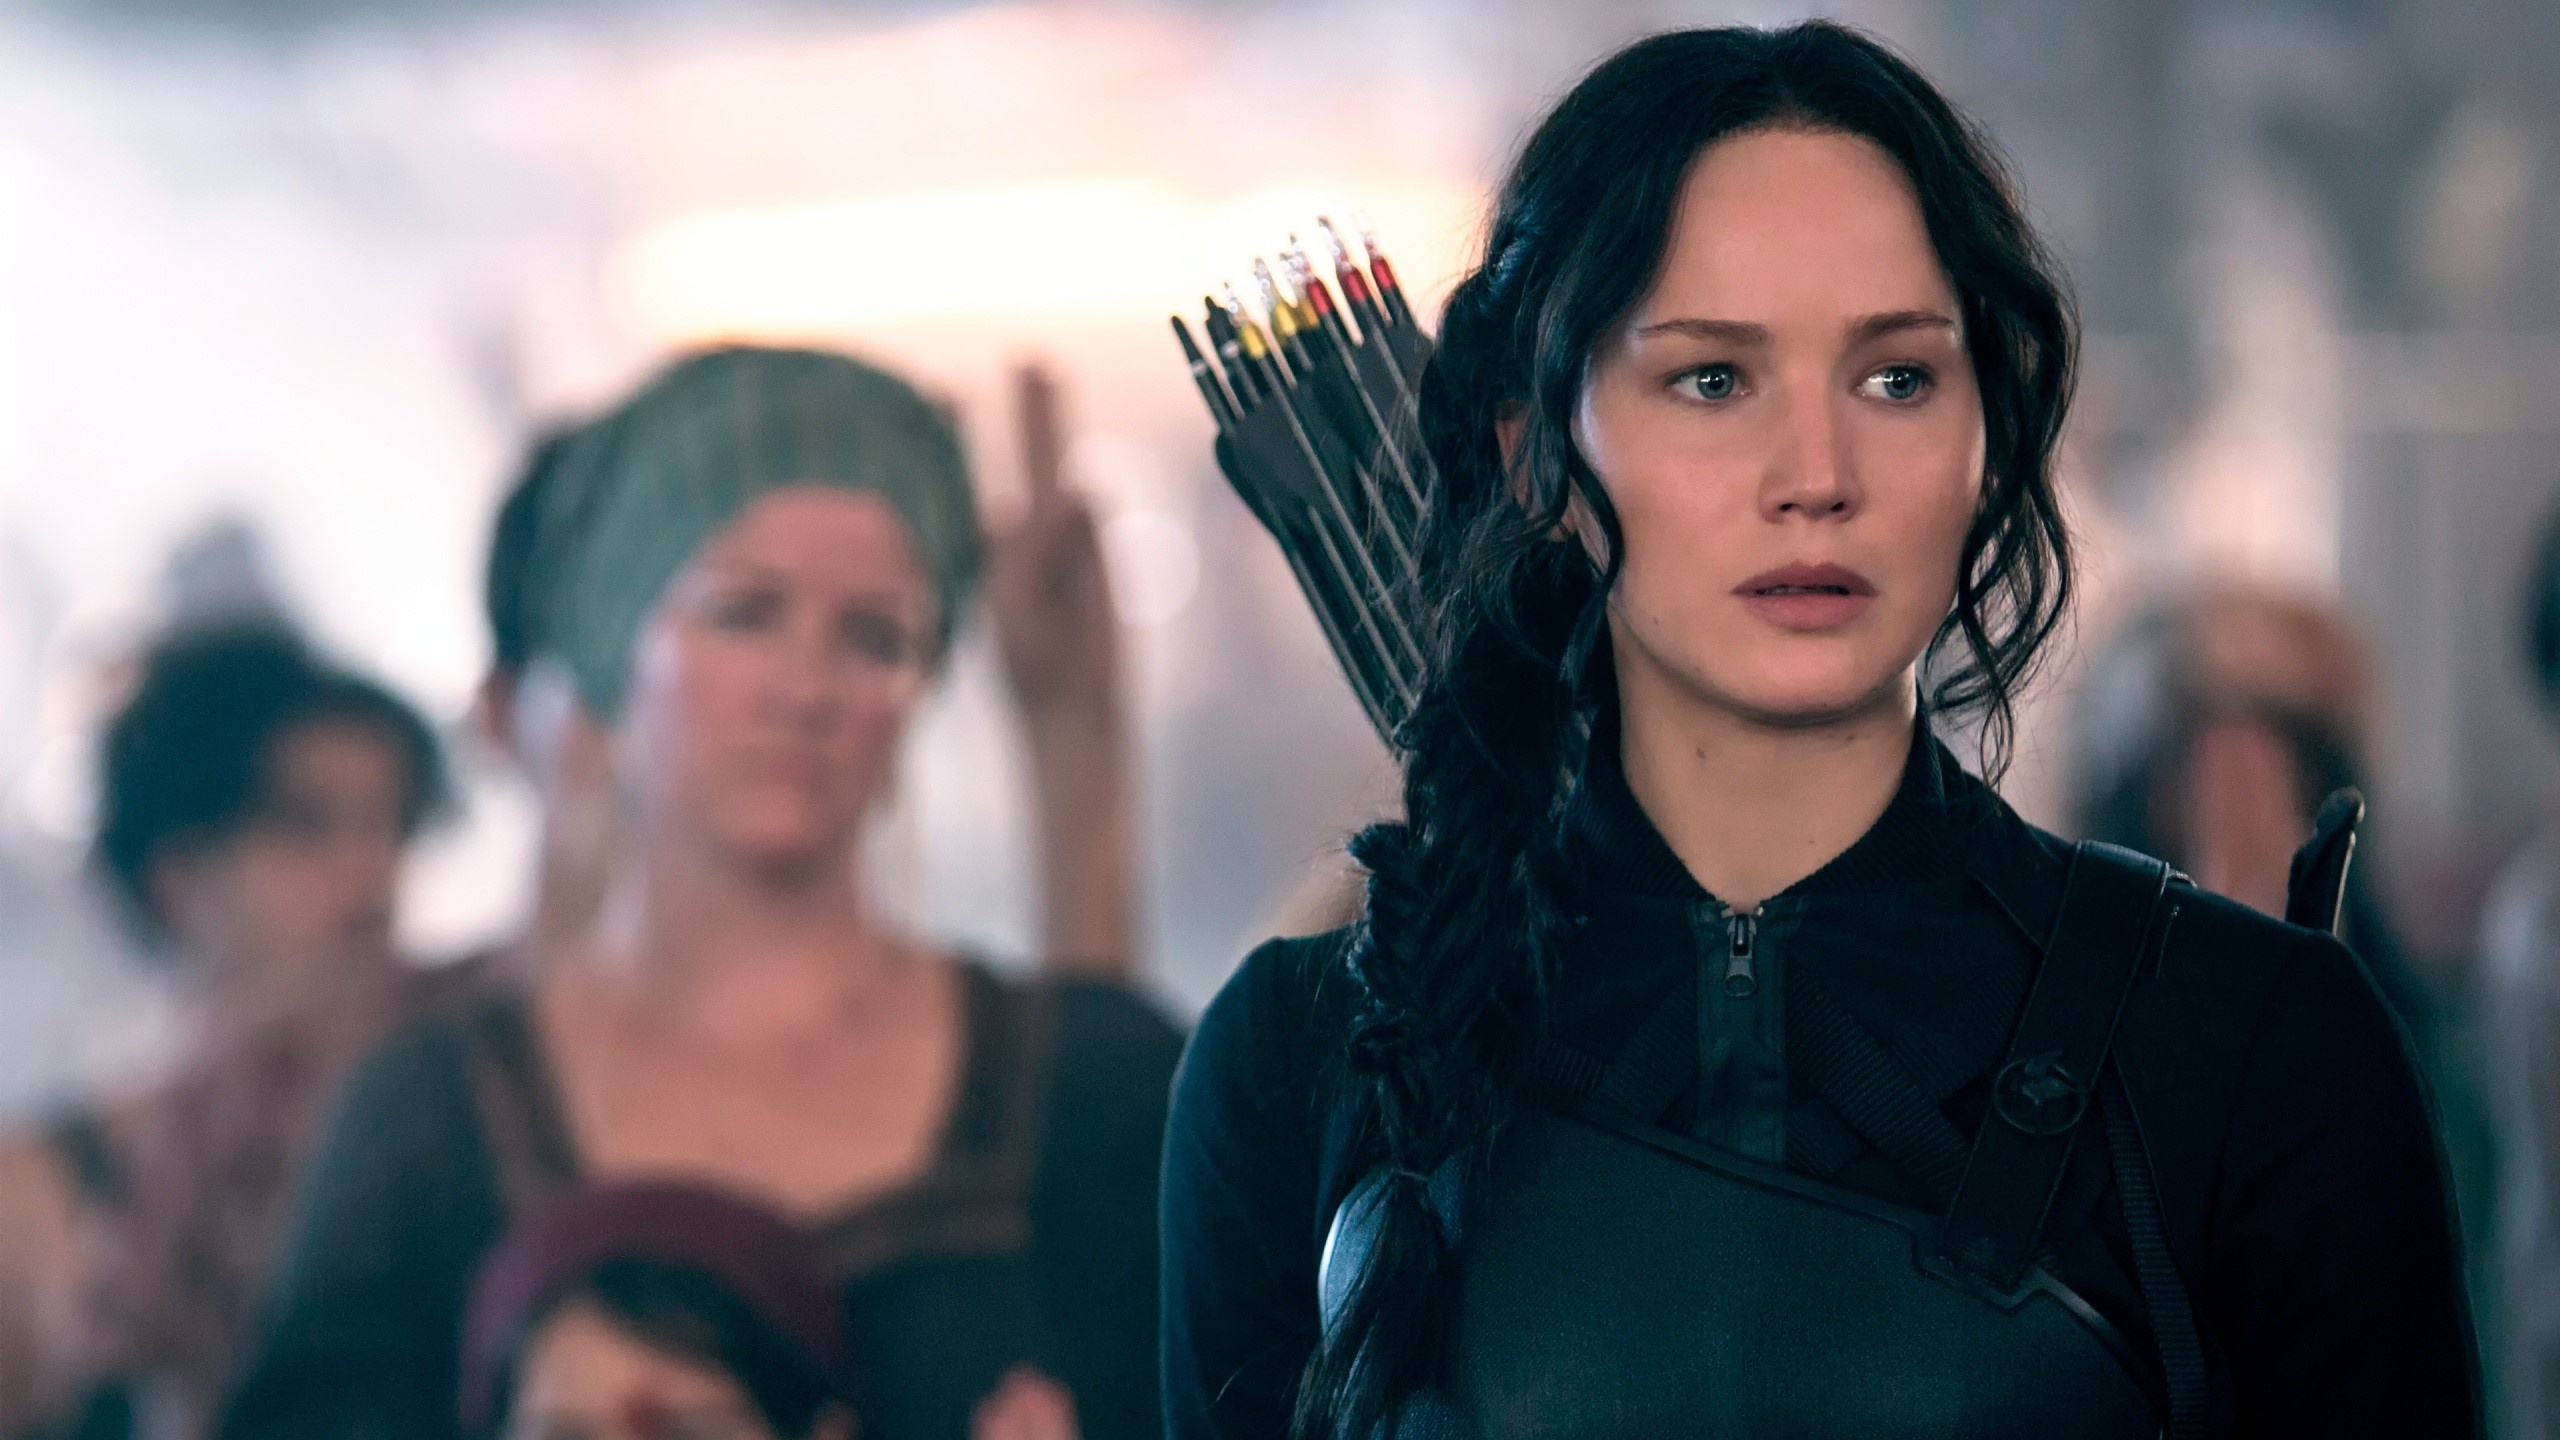 Jennifer Lawrence, The Hunger Games, Katniss Everdeen wallpaper, 2560x1440 HD Desktop